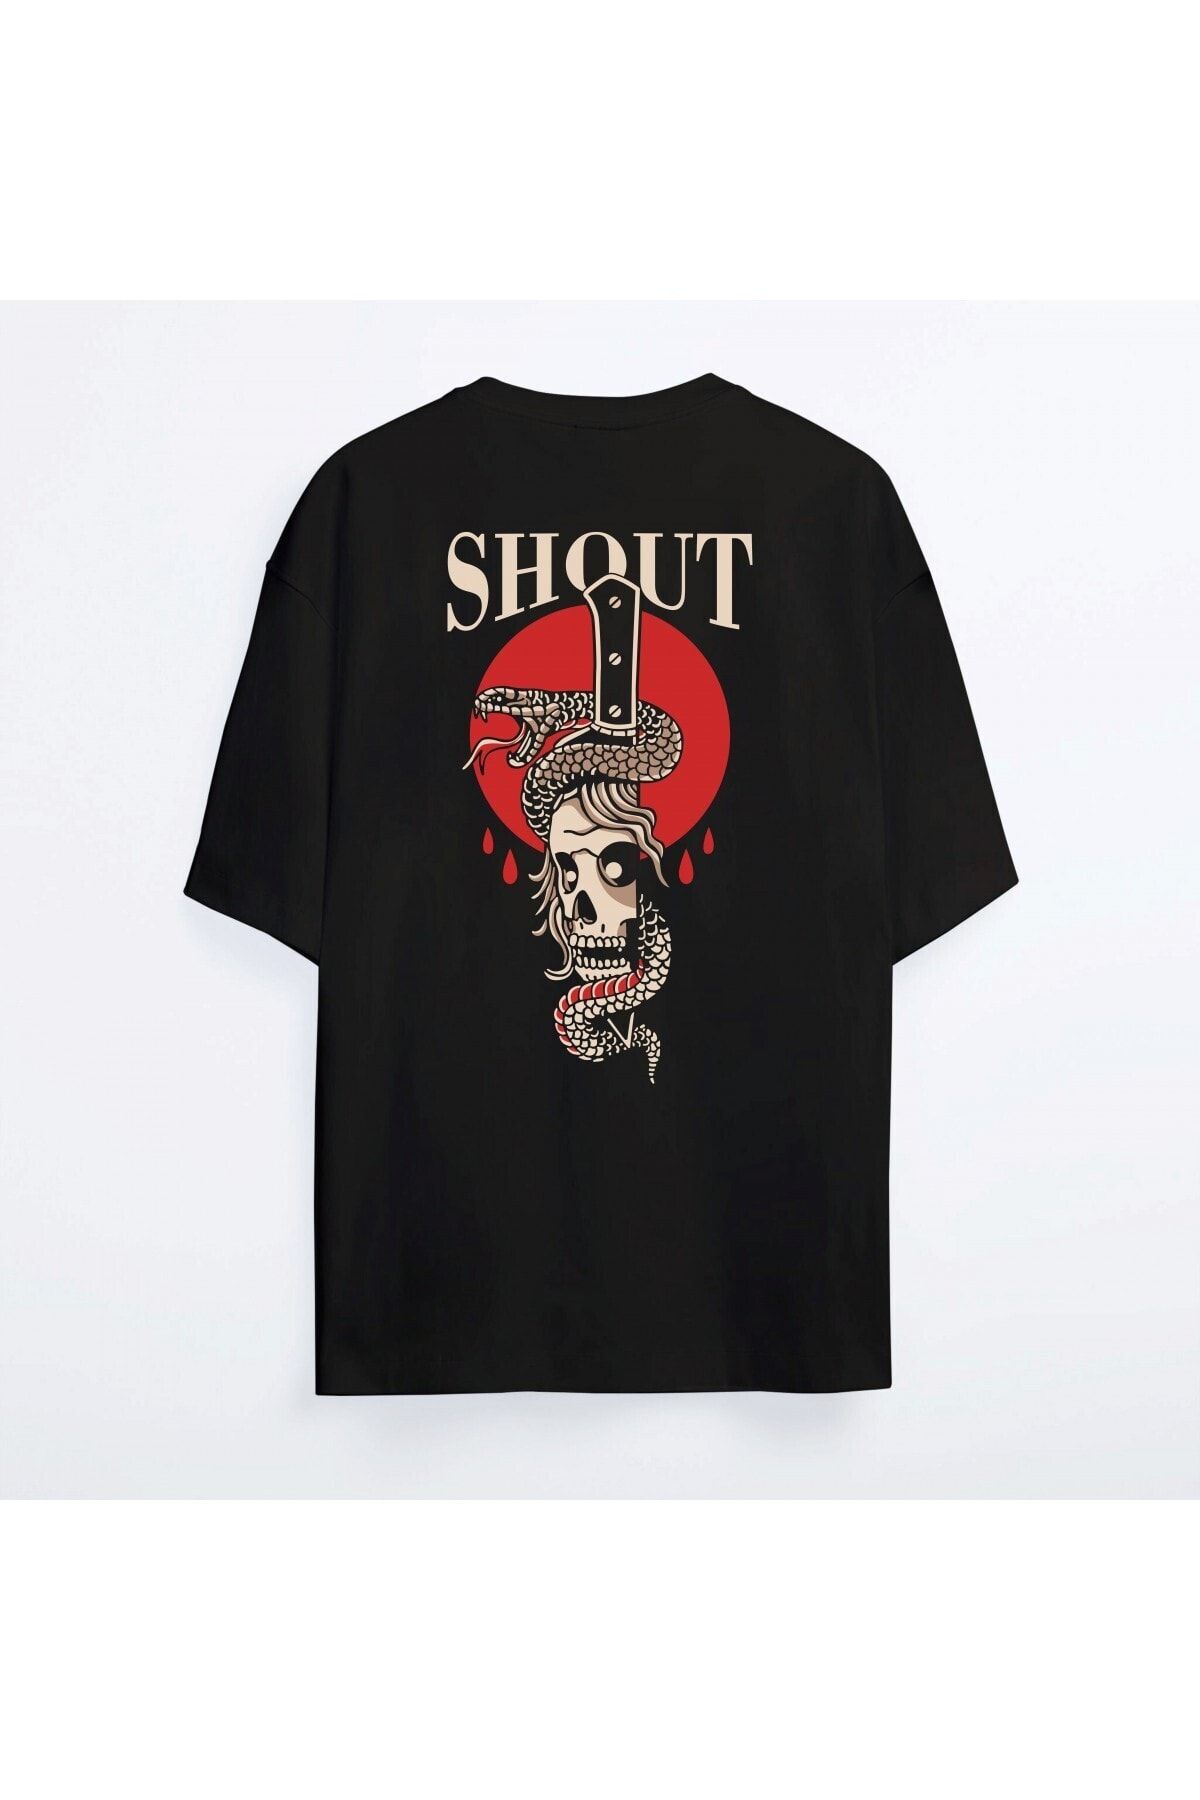 Shout Oversize Skull And Snake Oldschool Unisex T-shirt